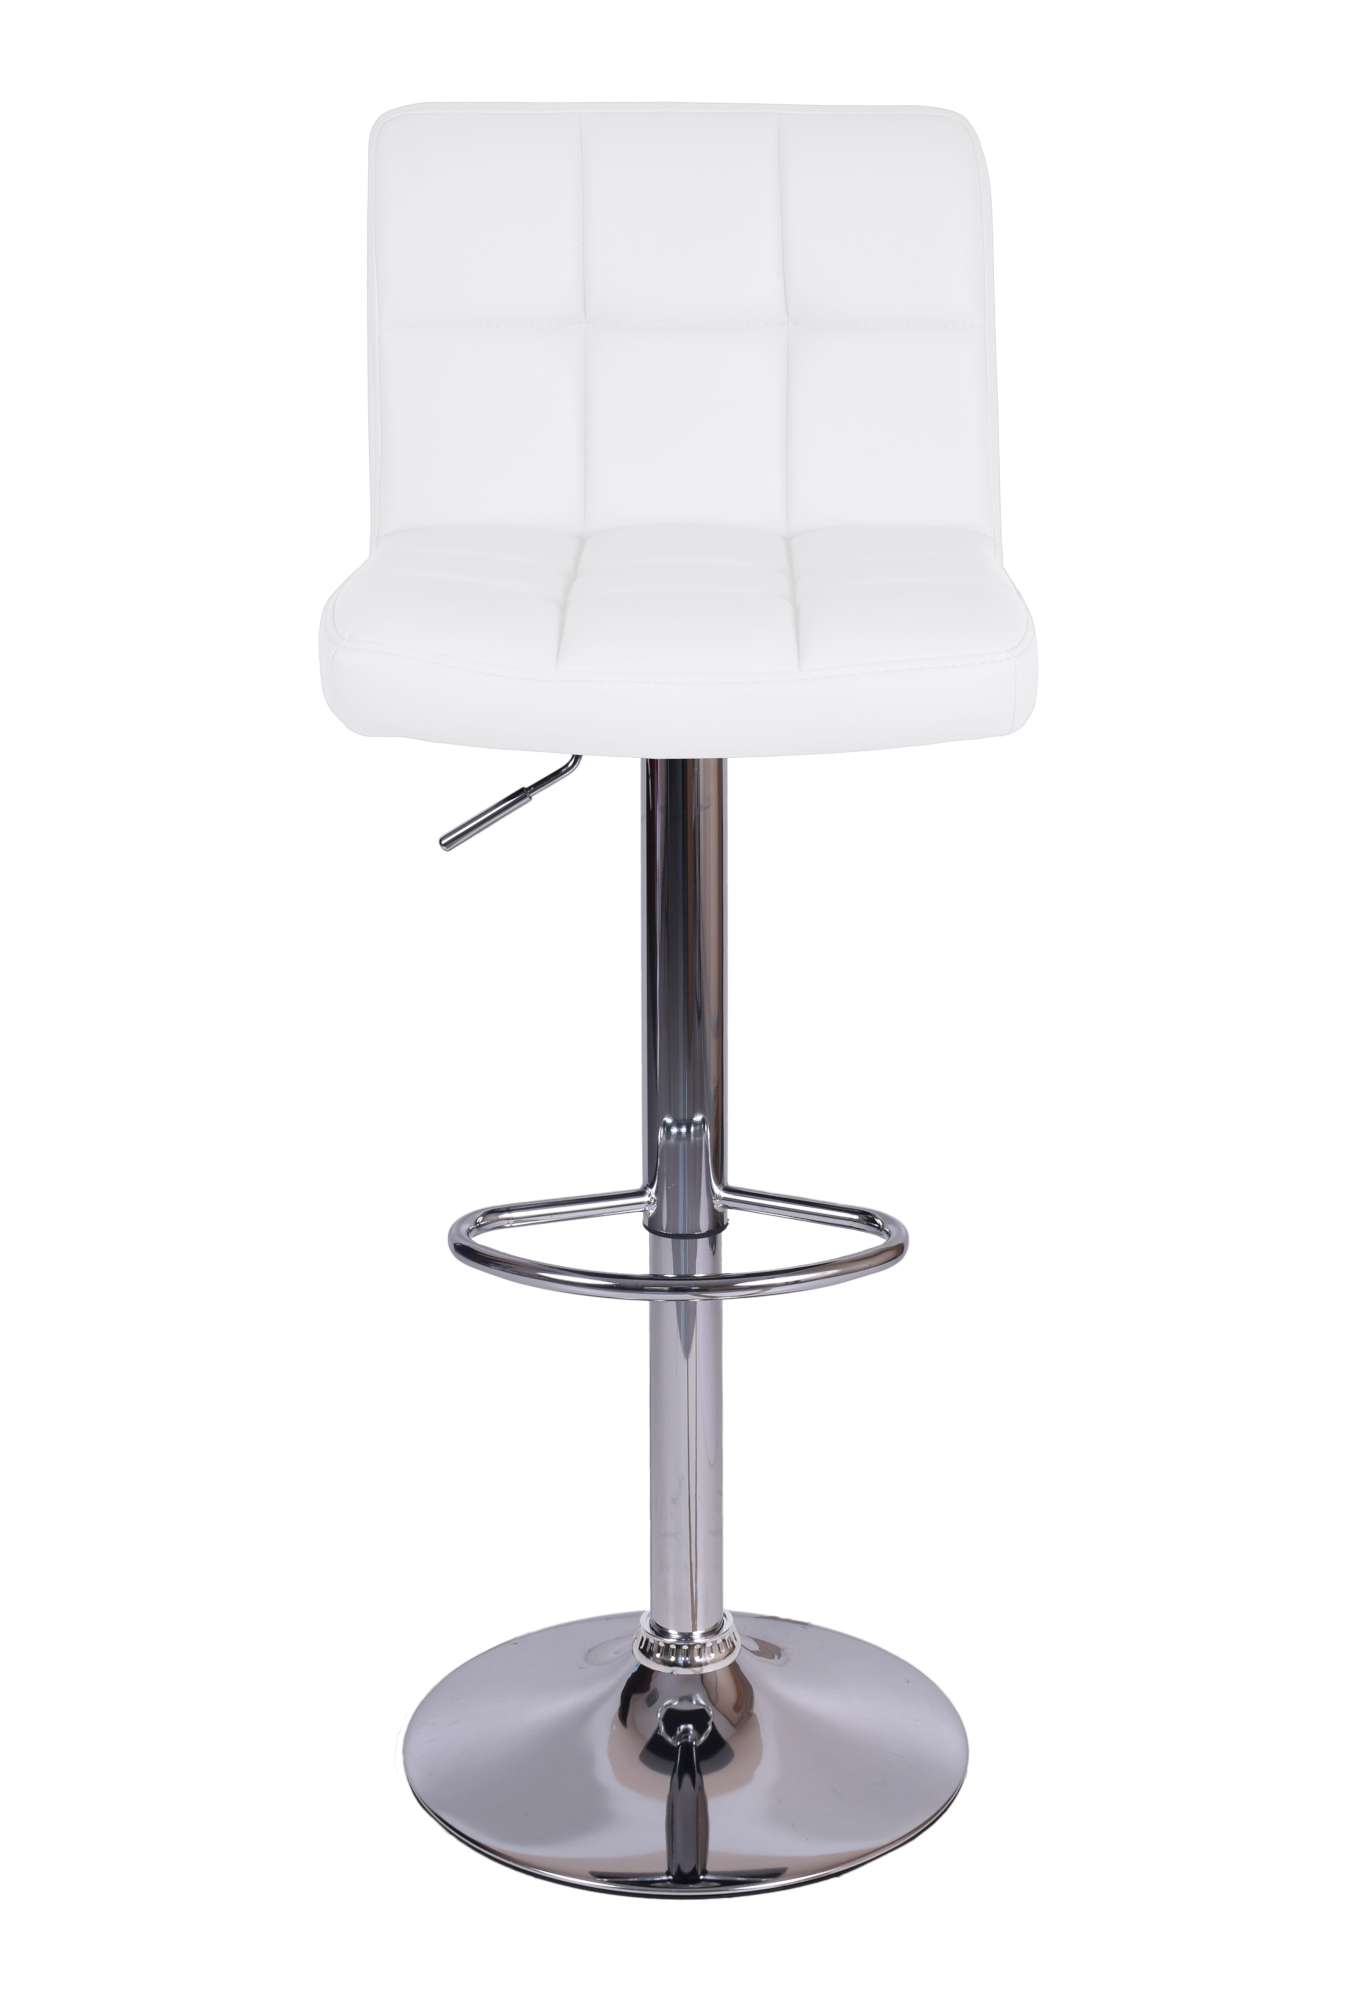 Krzesło obrotowe Arako białe